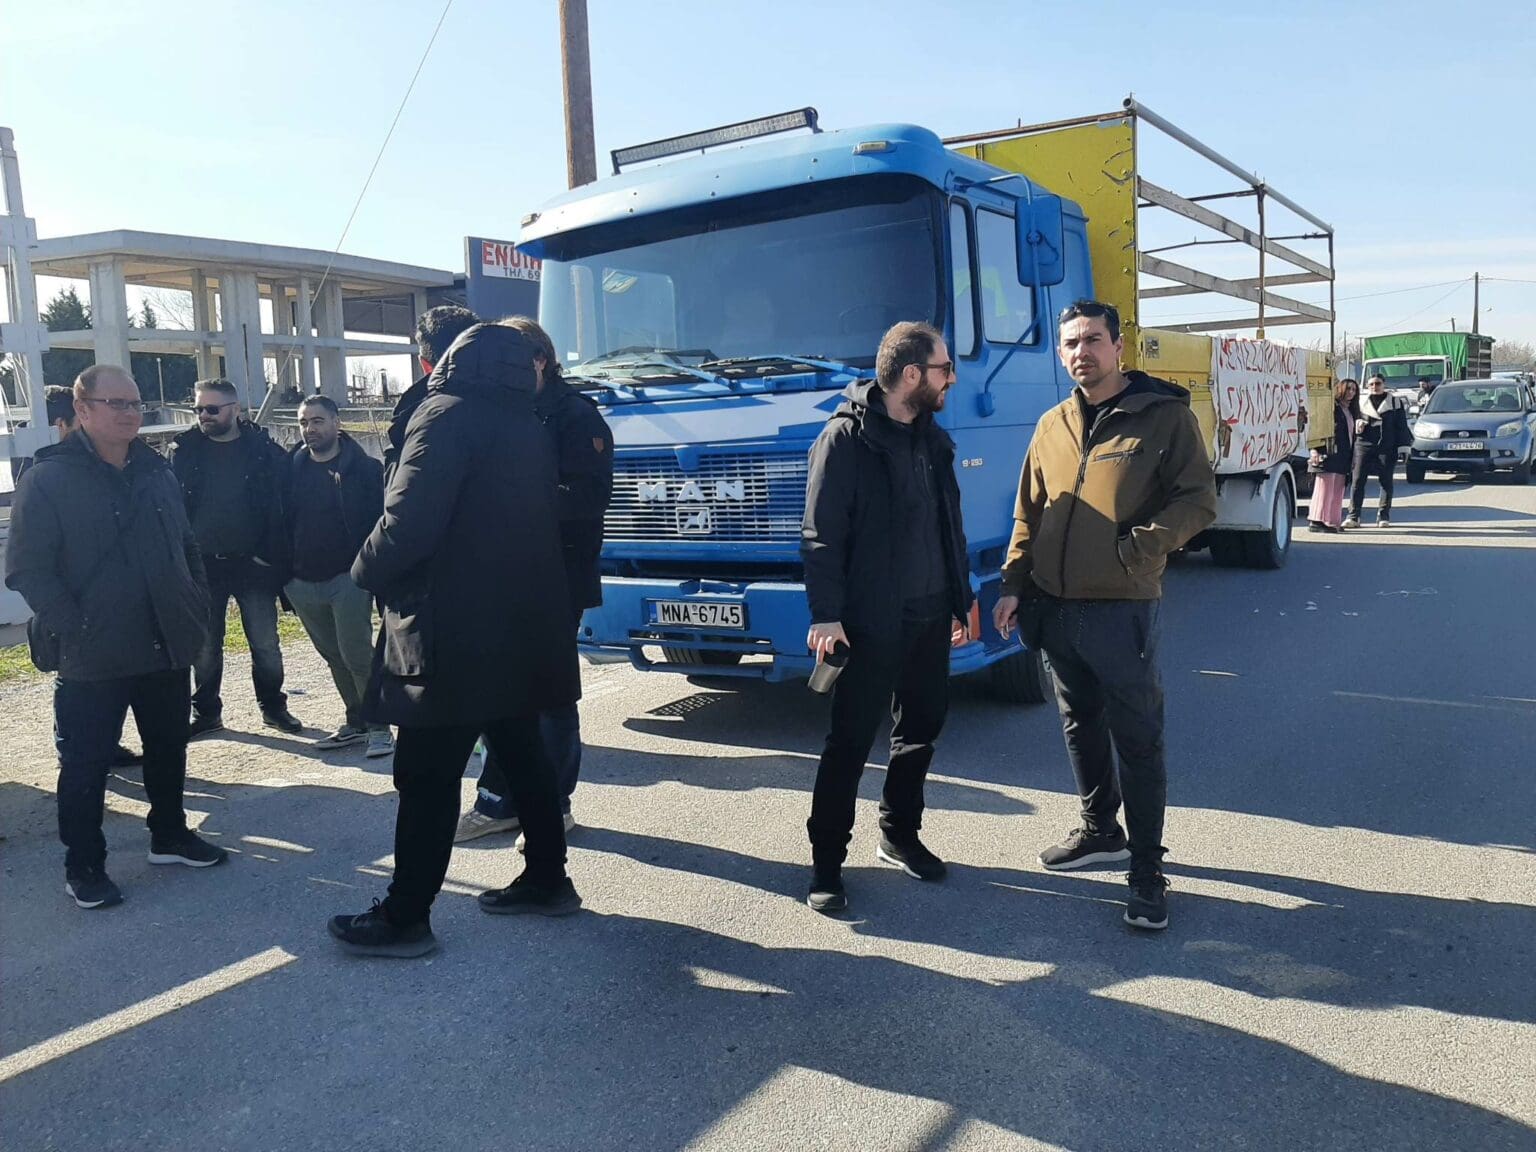 Μηχανοκίνητη πορεία διαμαρτυρίας μελισσοκόμων στην Κοζάνη